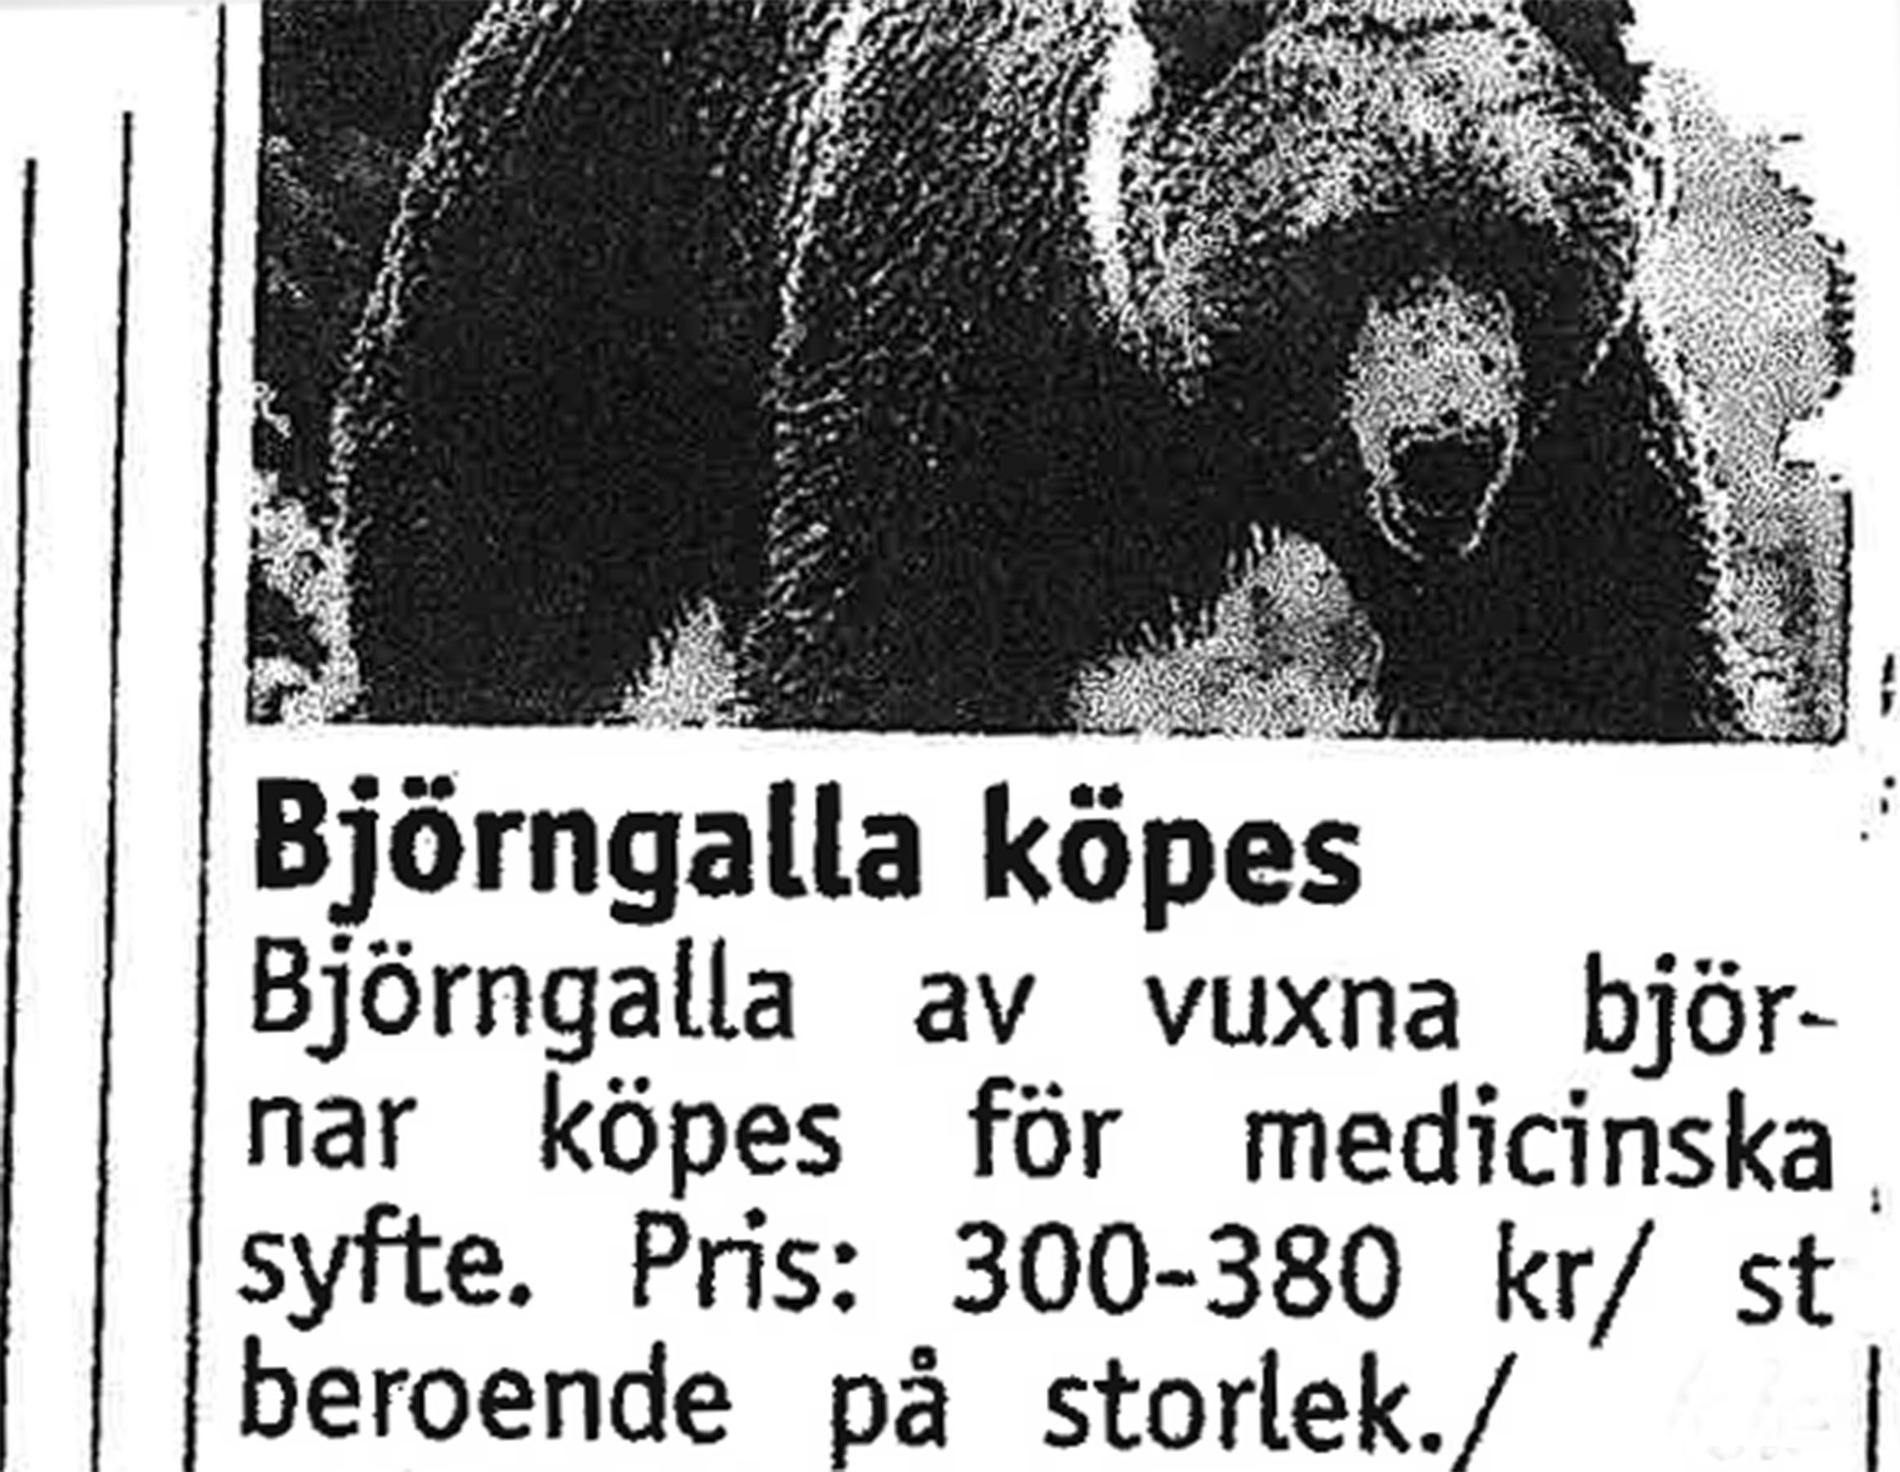 Exempel på annonser efter björngalla för medicinska skäl. Mannen dömdes för artskyddsbrott.